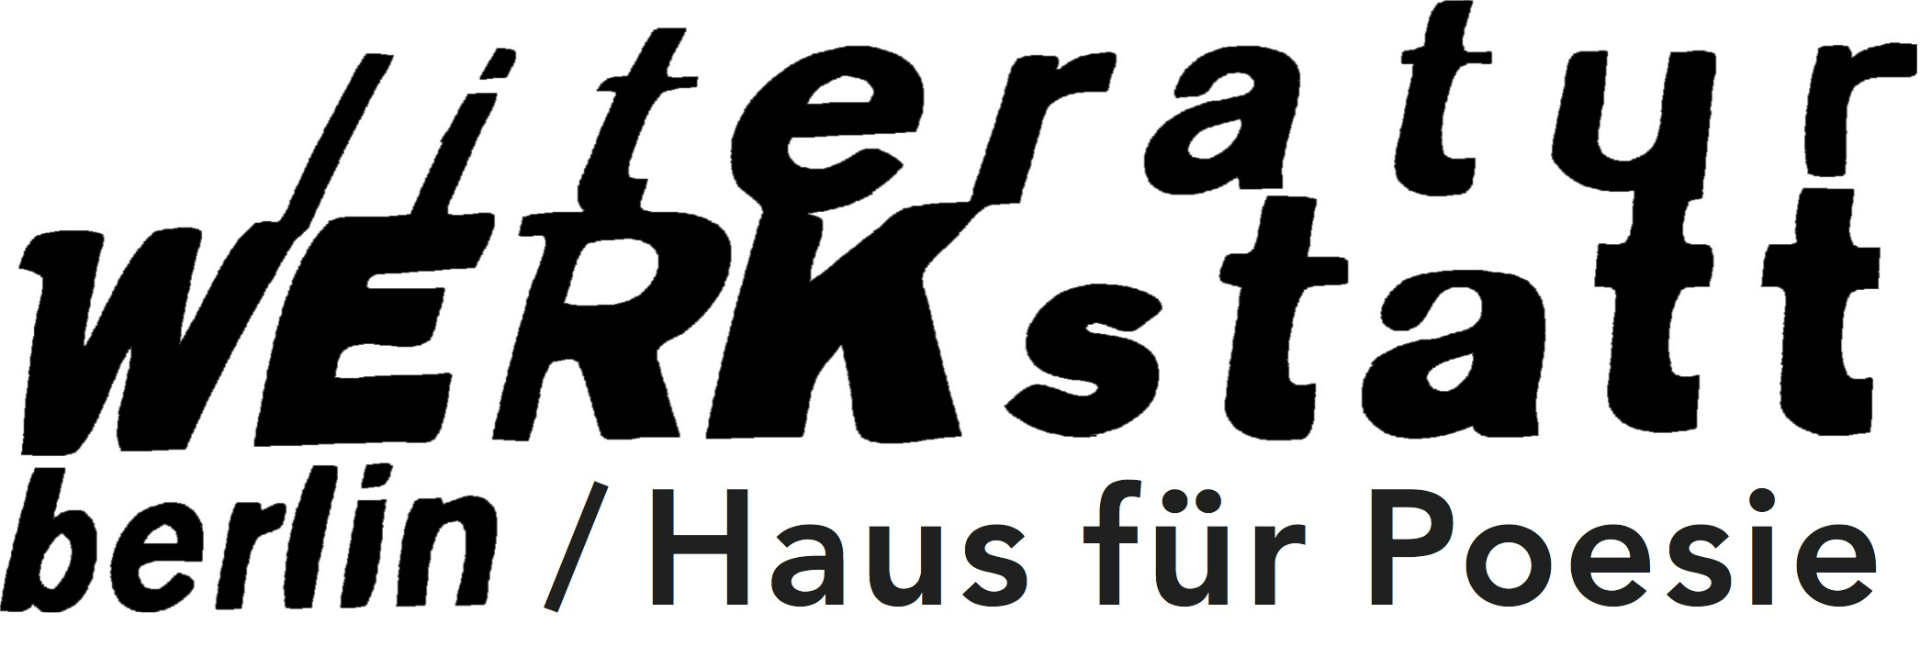 Logo Literaturwerkstatt Berlin Haus fuer Poesie Shida Bazyar über Christine Nöstlinger.